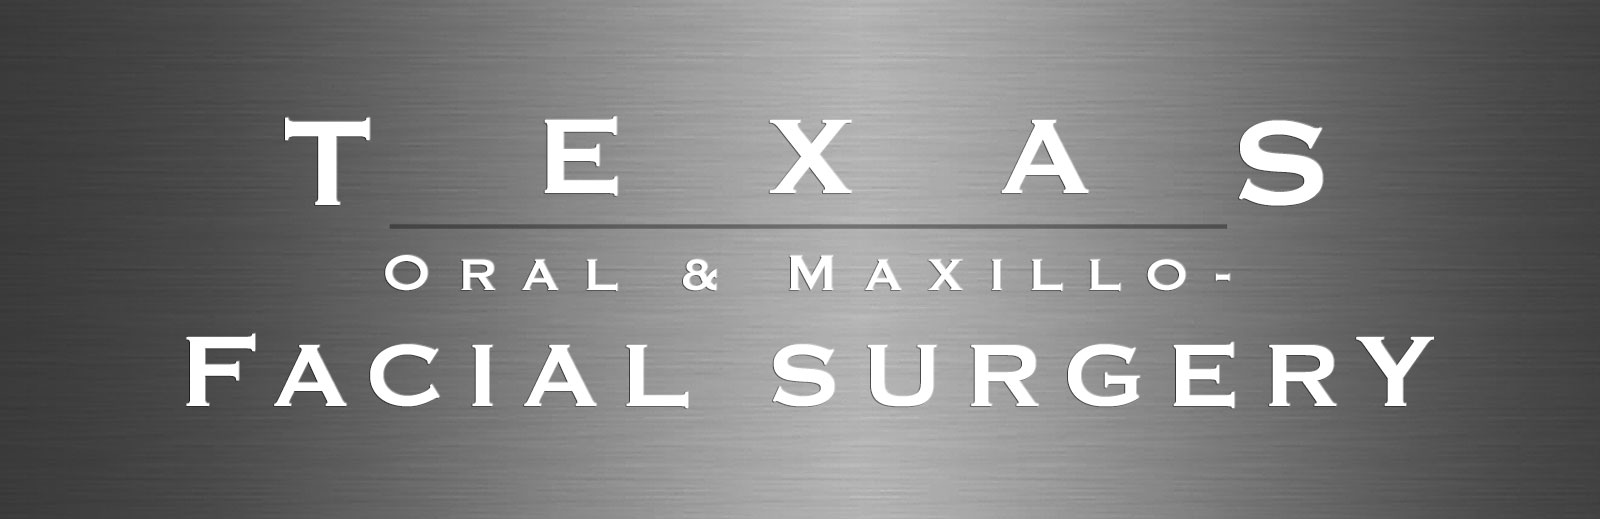 Texas Oral & Maxillofacial Surgery